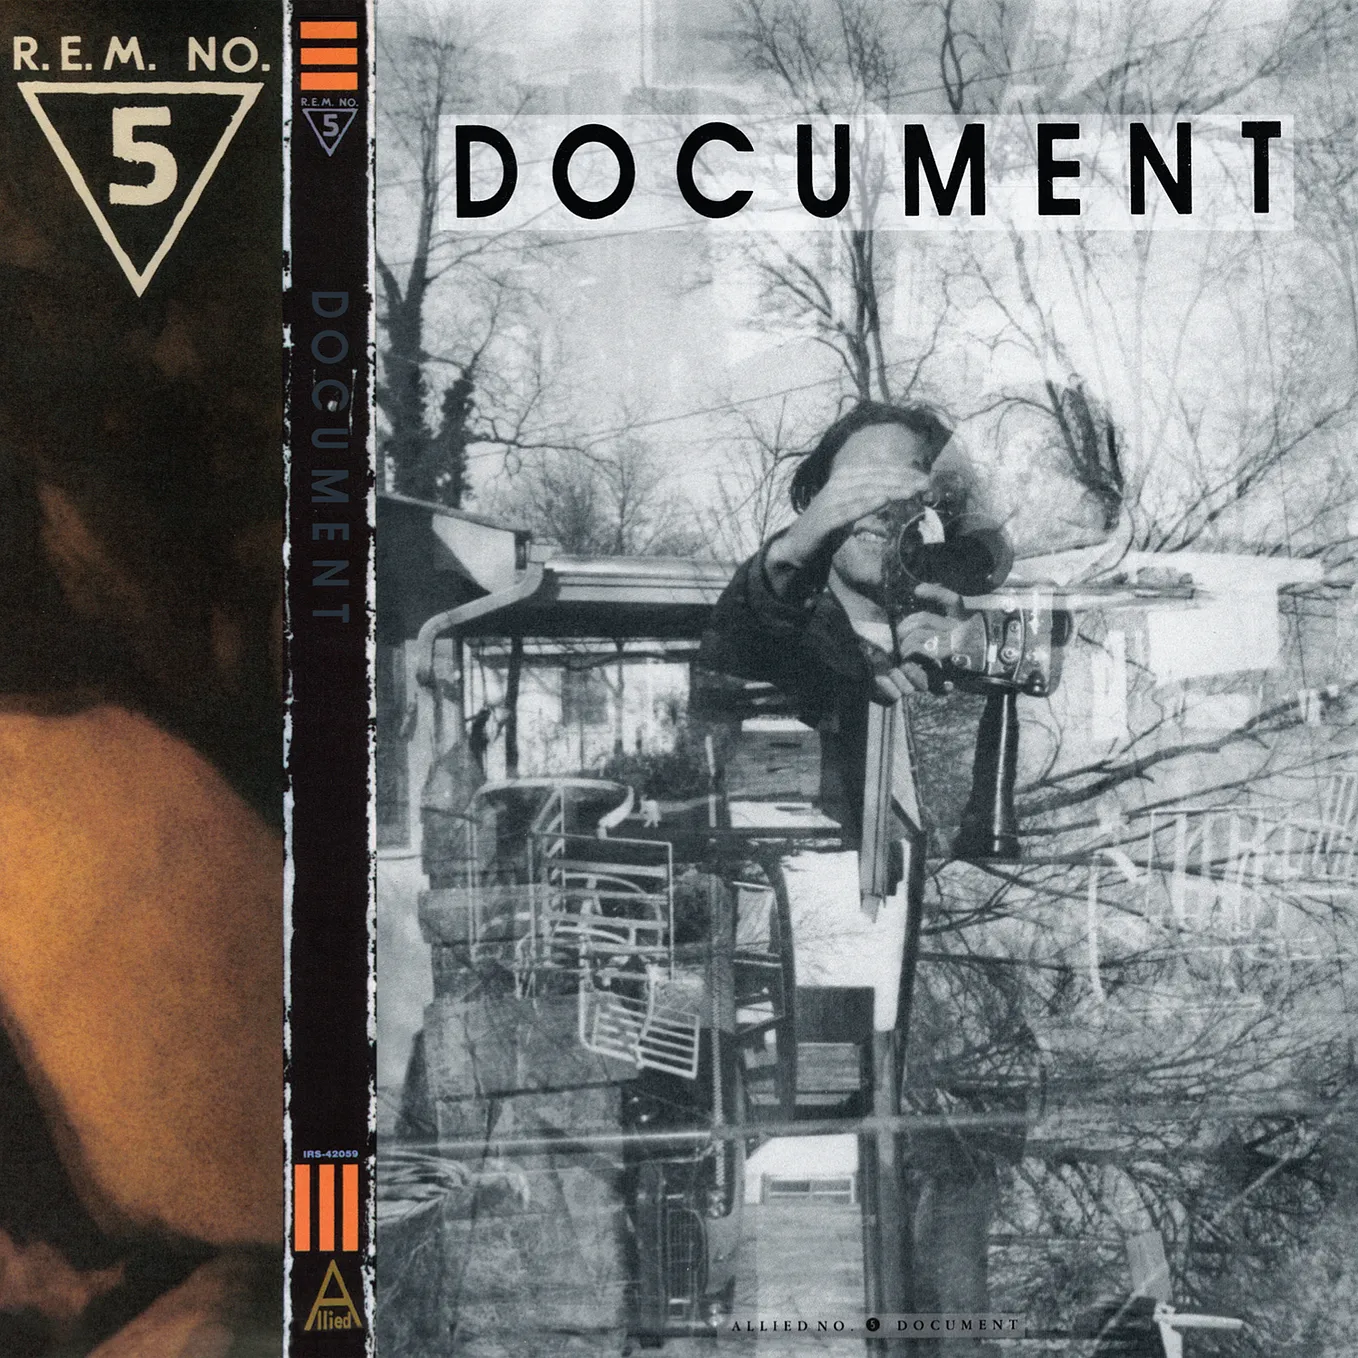 462: R.E.M. — Document (1987, I.R.S.)